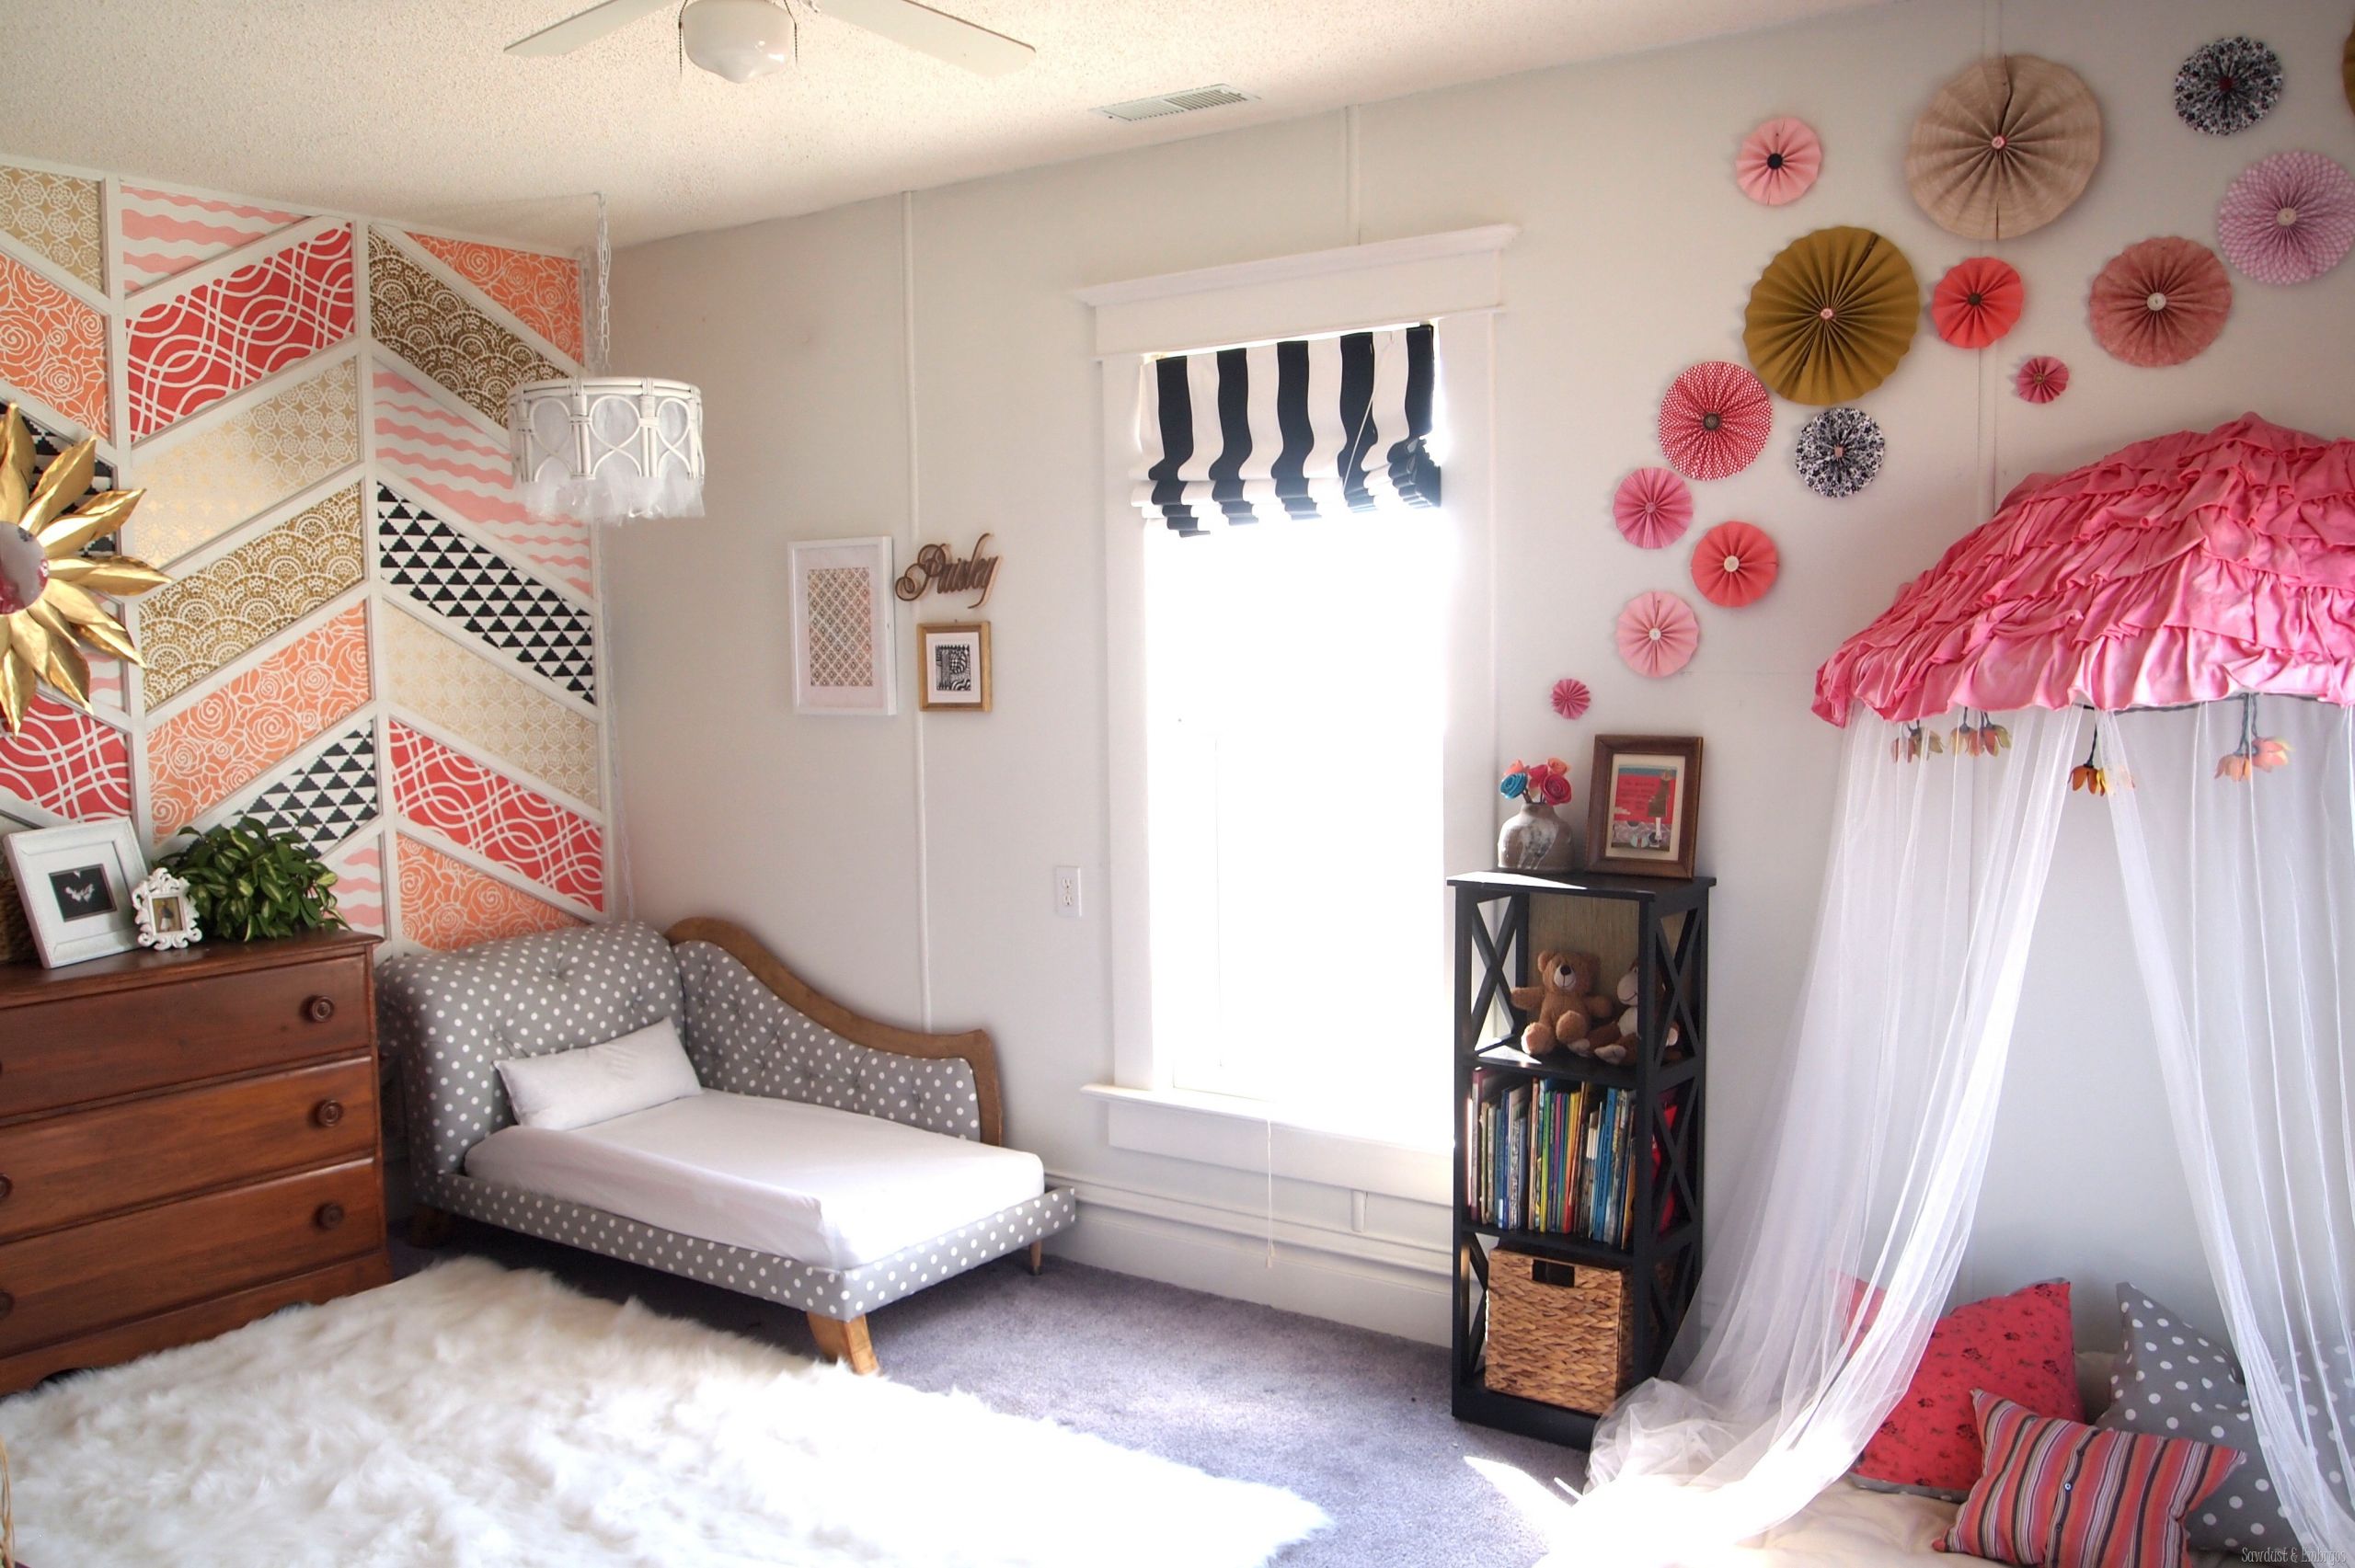 DIY Toddler Girl Room Decor
 DIY Paper Pinwheel Wall Collage Tutorial